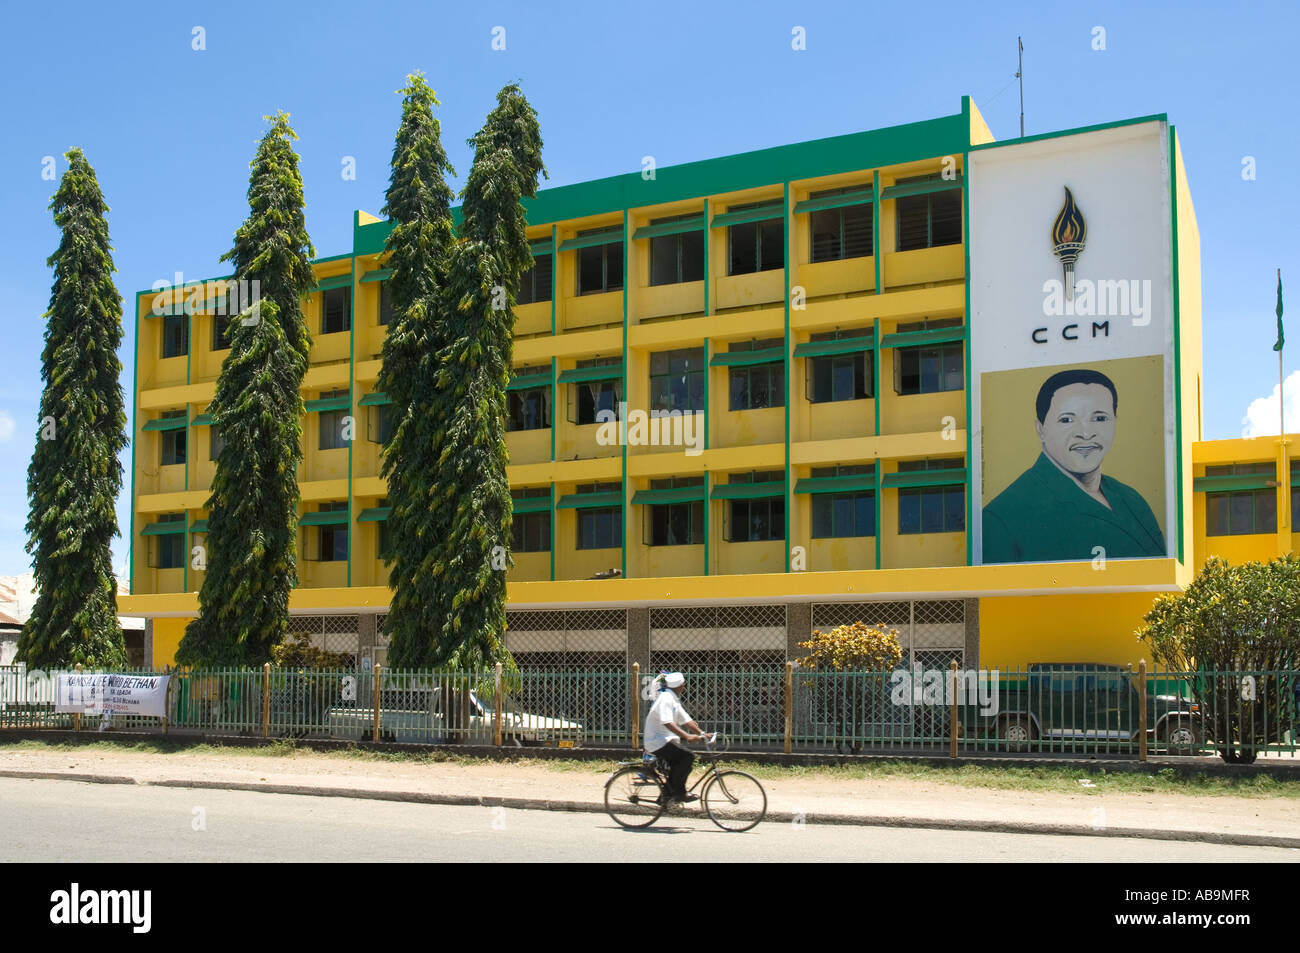 Büro der politischen Regierungspartei Chama Cha Mapinduzi (CCM, Partei der Revolution auf Suaheli) in Tanga, Tansania Stockfoto